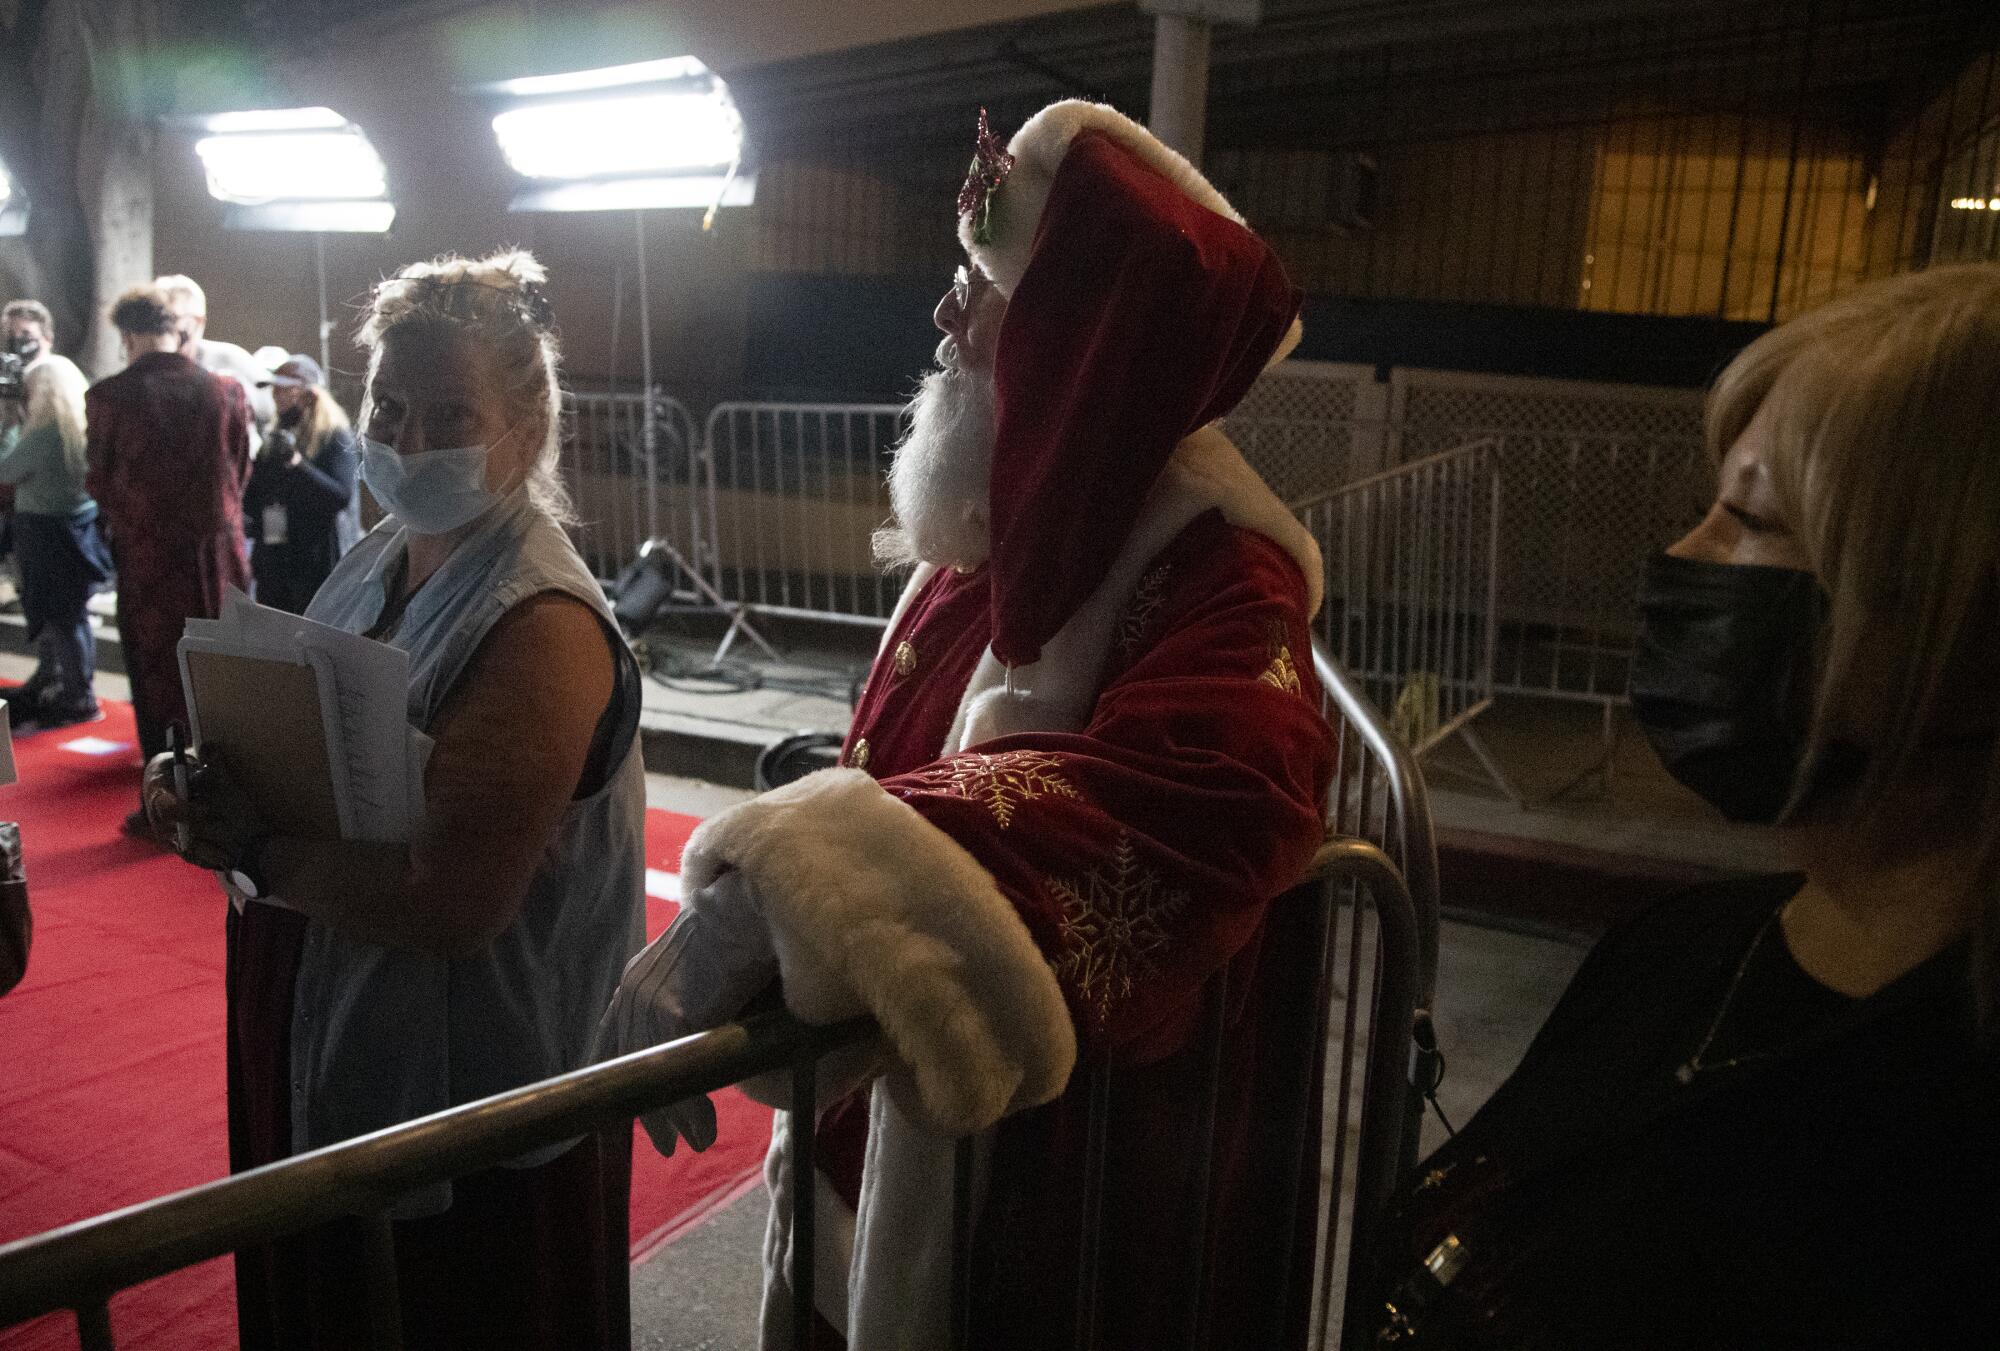 Santa Claus waits backstage